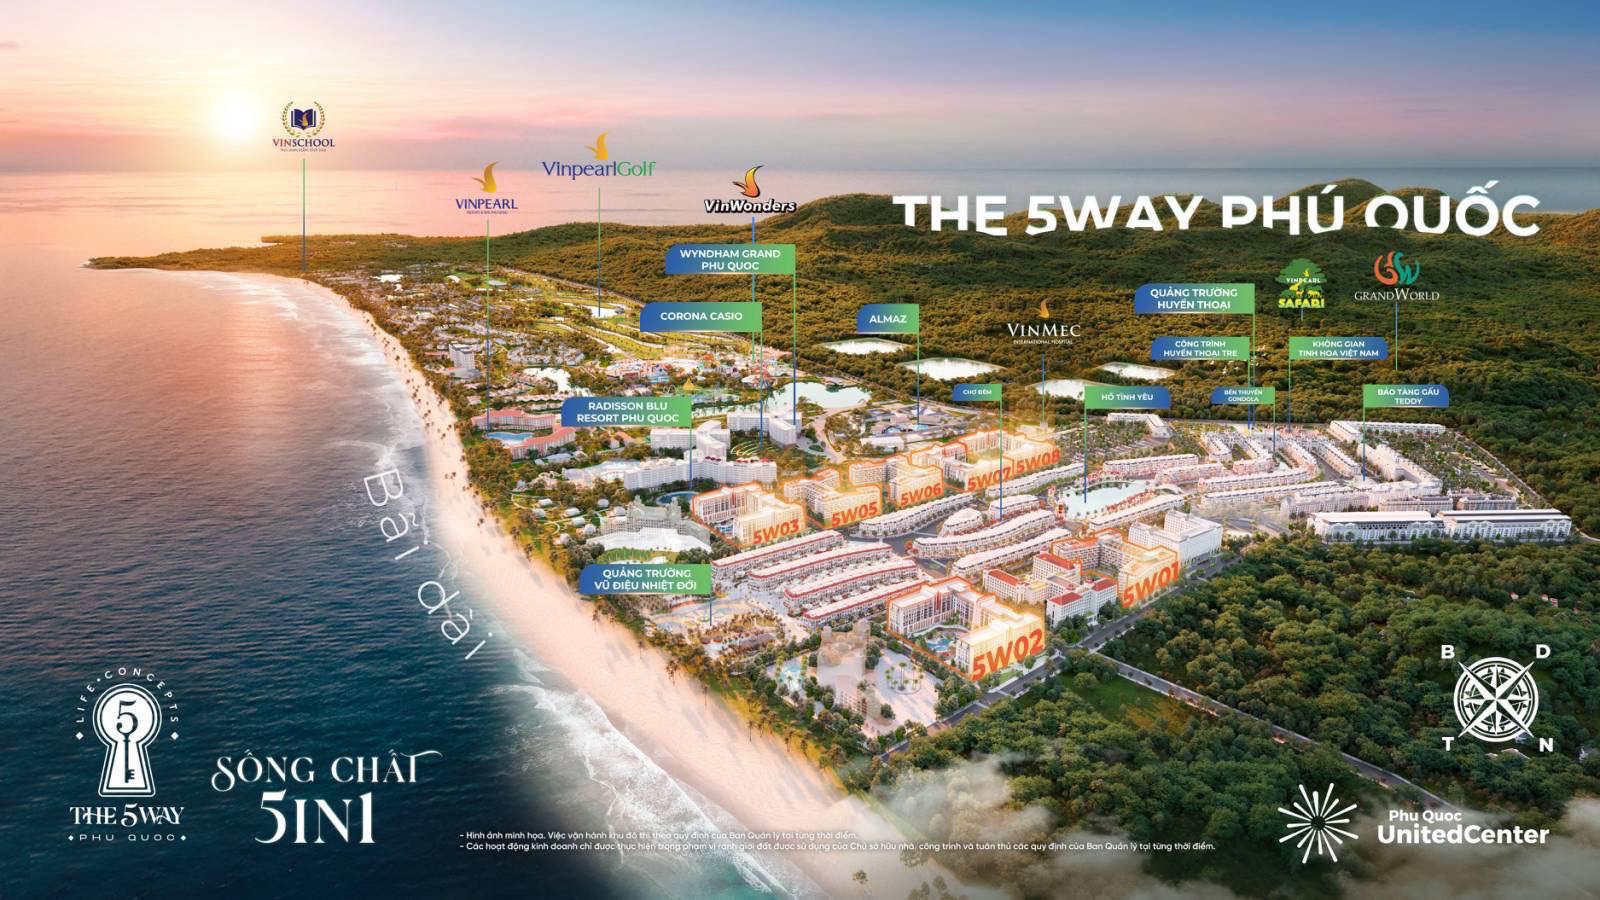 Hợp tác khai thác, vận hành căn hộ biển The 5Way Phu Quoc - The Life Concepts giữa Sunny Land và Jomo Travel - 1